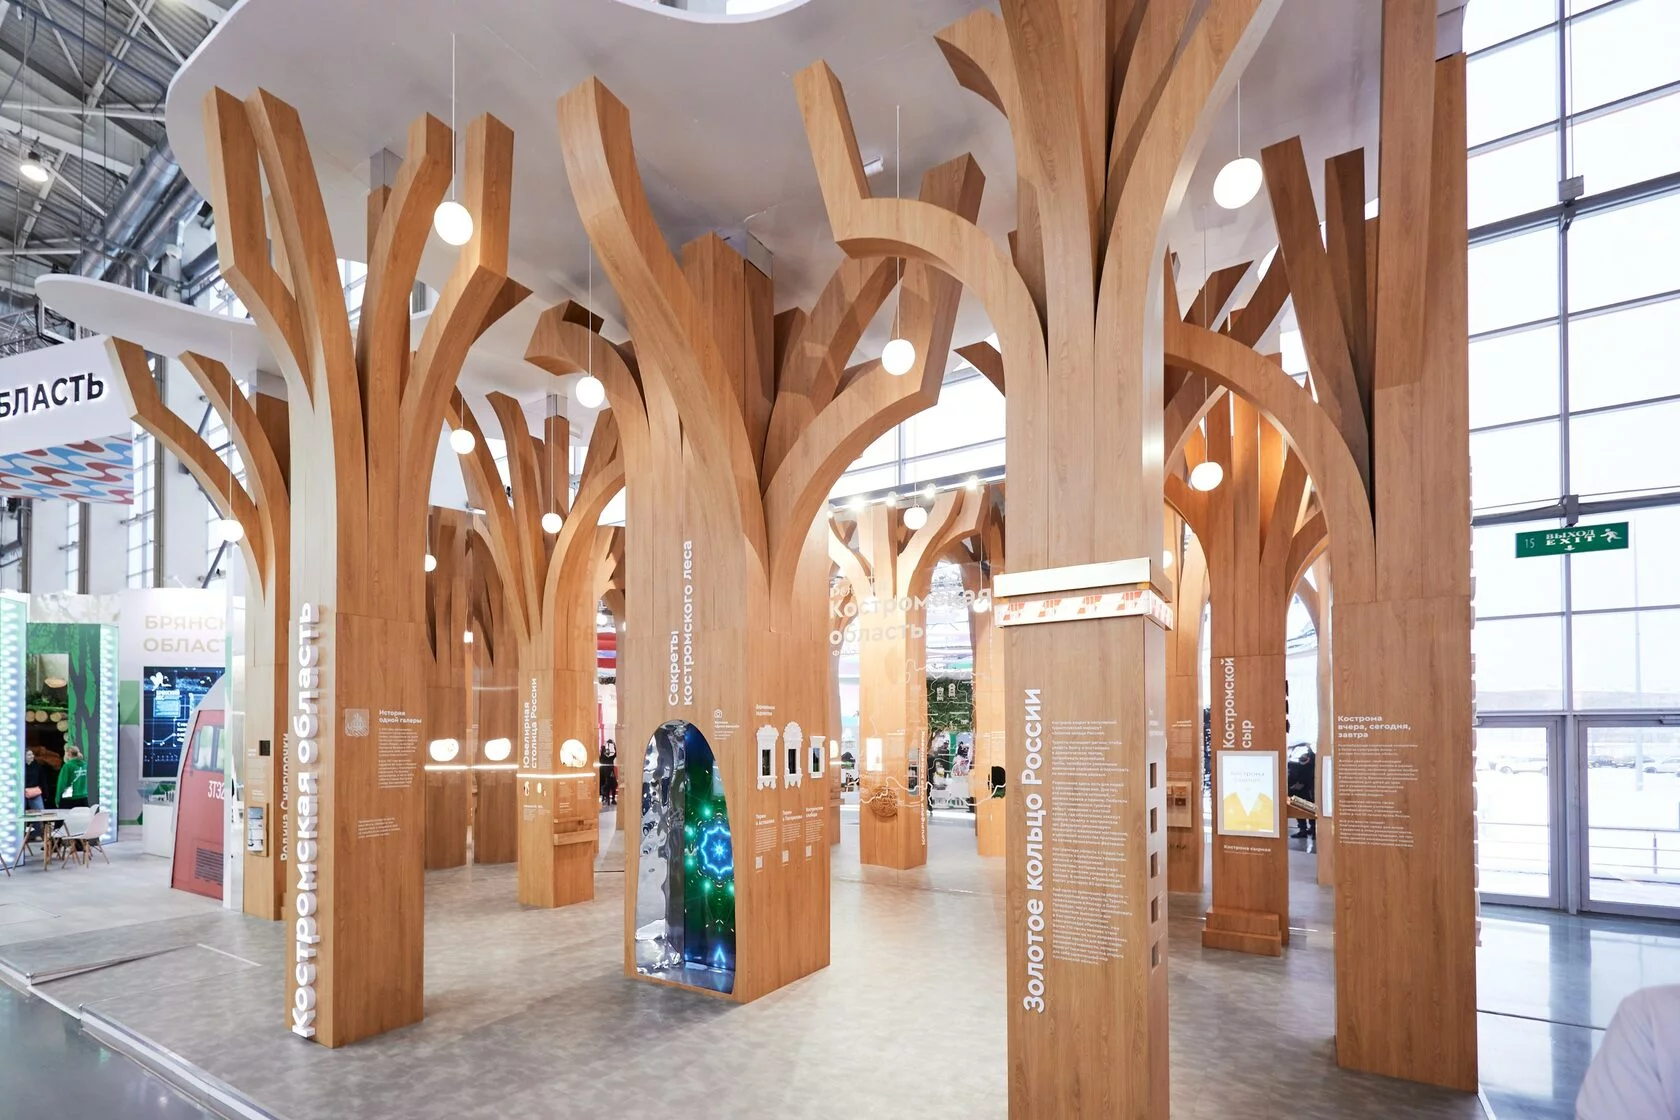 Стенд Костромской области из 9 деревьев на выставке «Россия» придумали москвичи